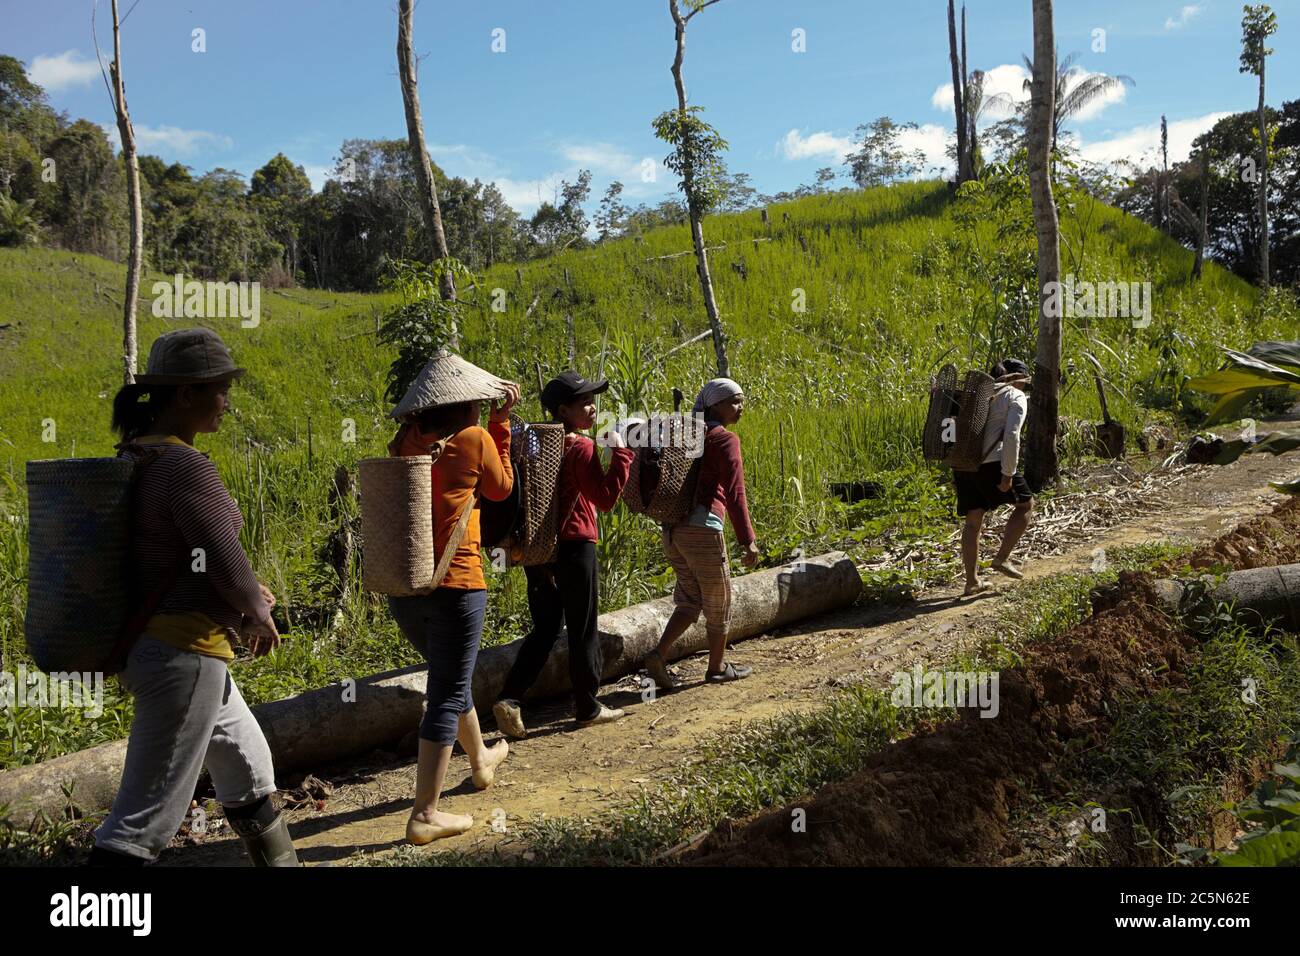 Frauen, die die IBAN-Gemeinschaft bewohnen, gehen nach ihrer Arbeit auf einer landwirtschaftlichen Farm in der Nähe des Dorfes Sungai Utik in Kapuas Hulu, West Kalimantan, Indonesien. Stockfoto